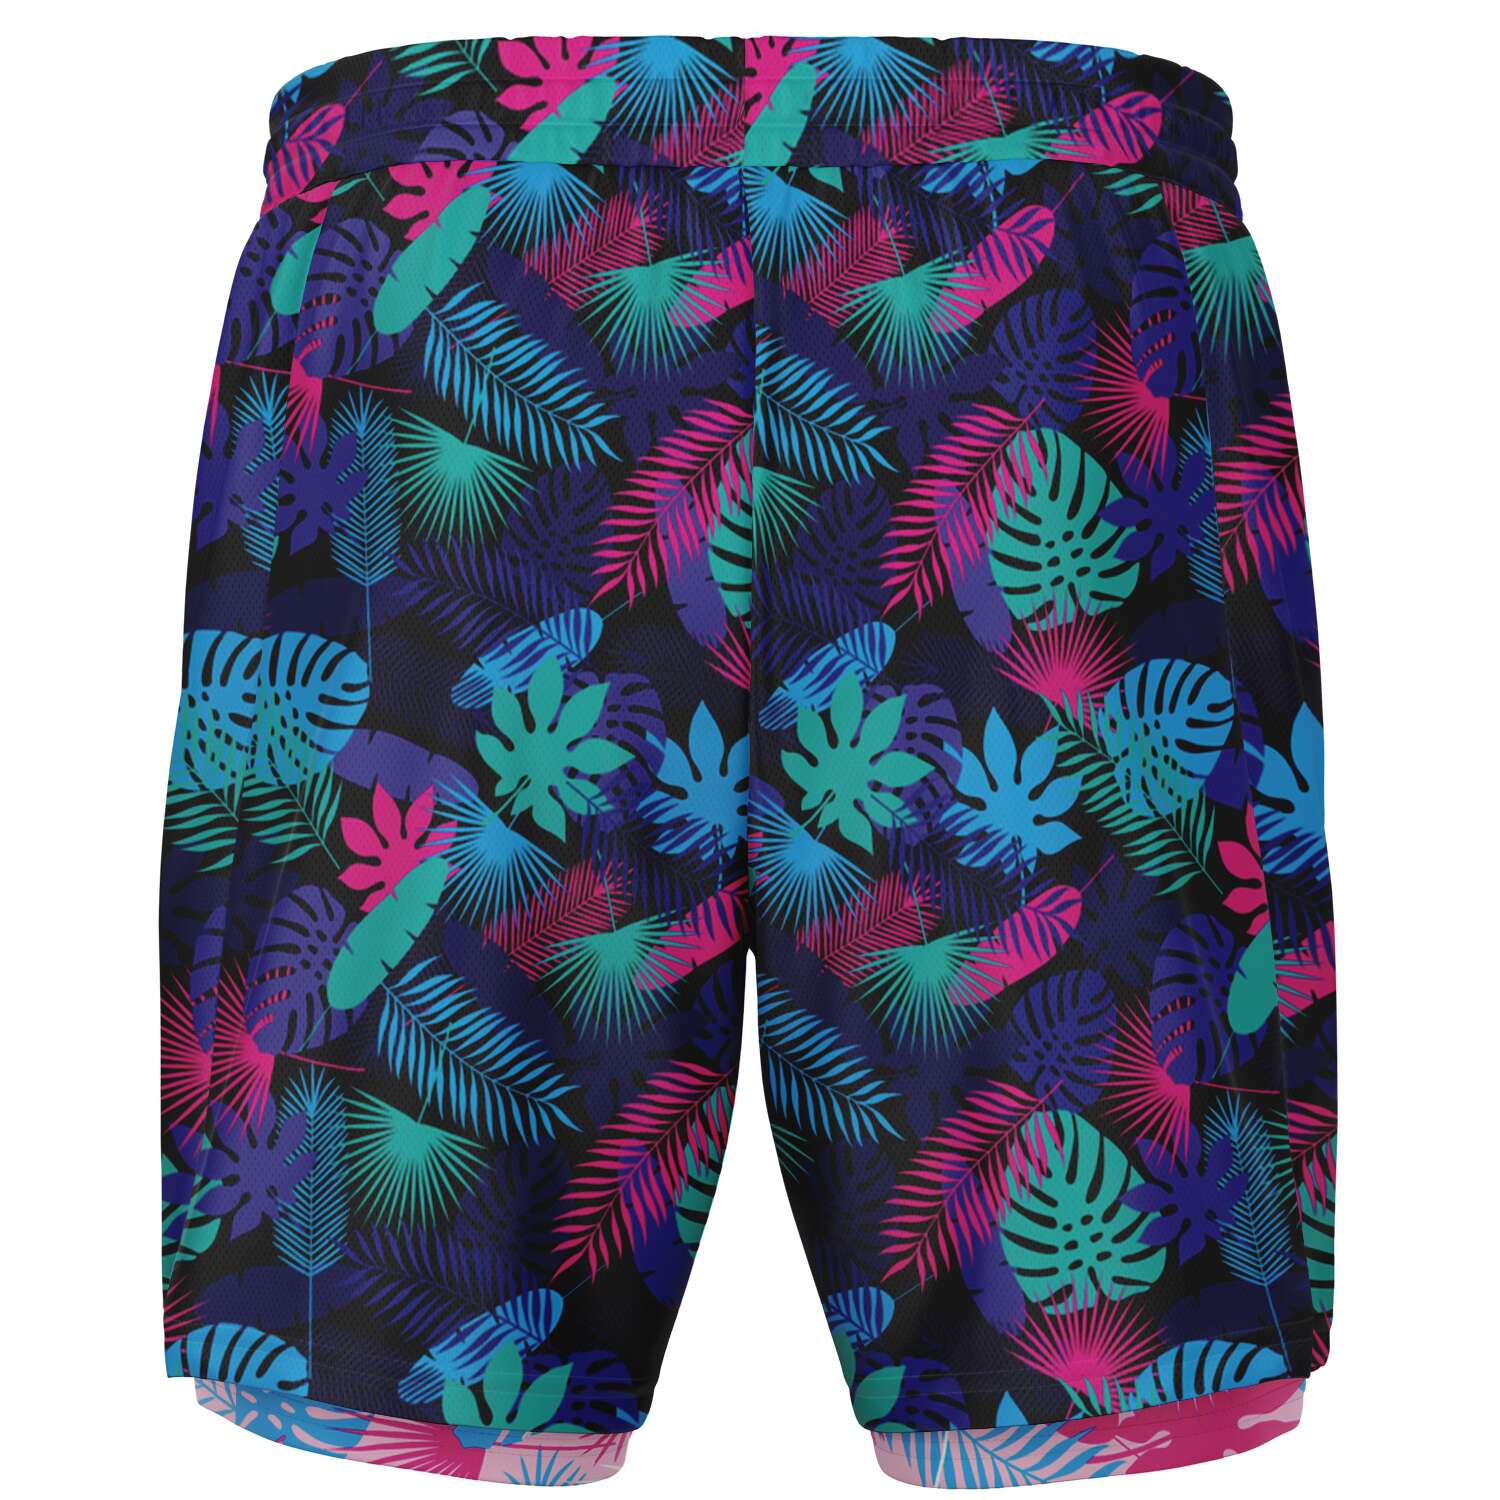 Rad Palm Neon Jungle Men's 2-in-1 Shorts